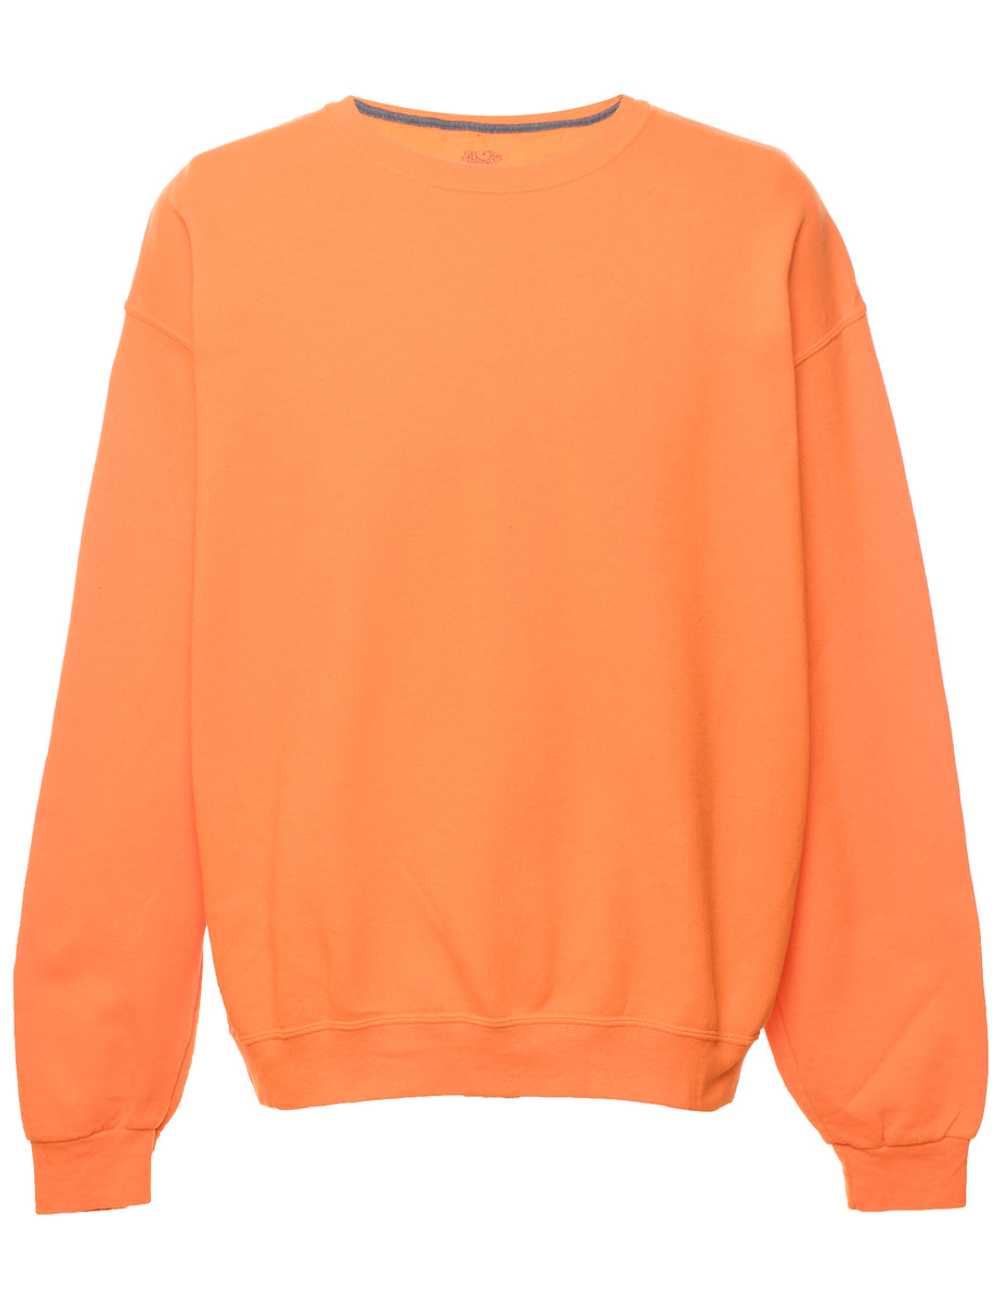 Orange Plain Sweatshirt - XL - image 1